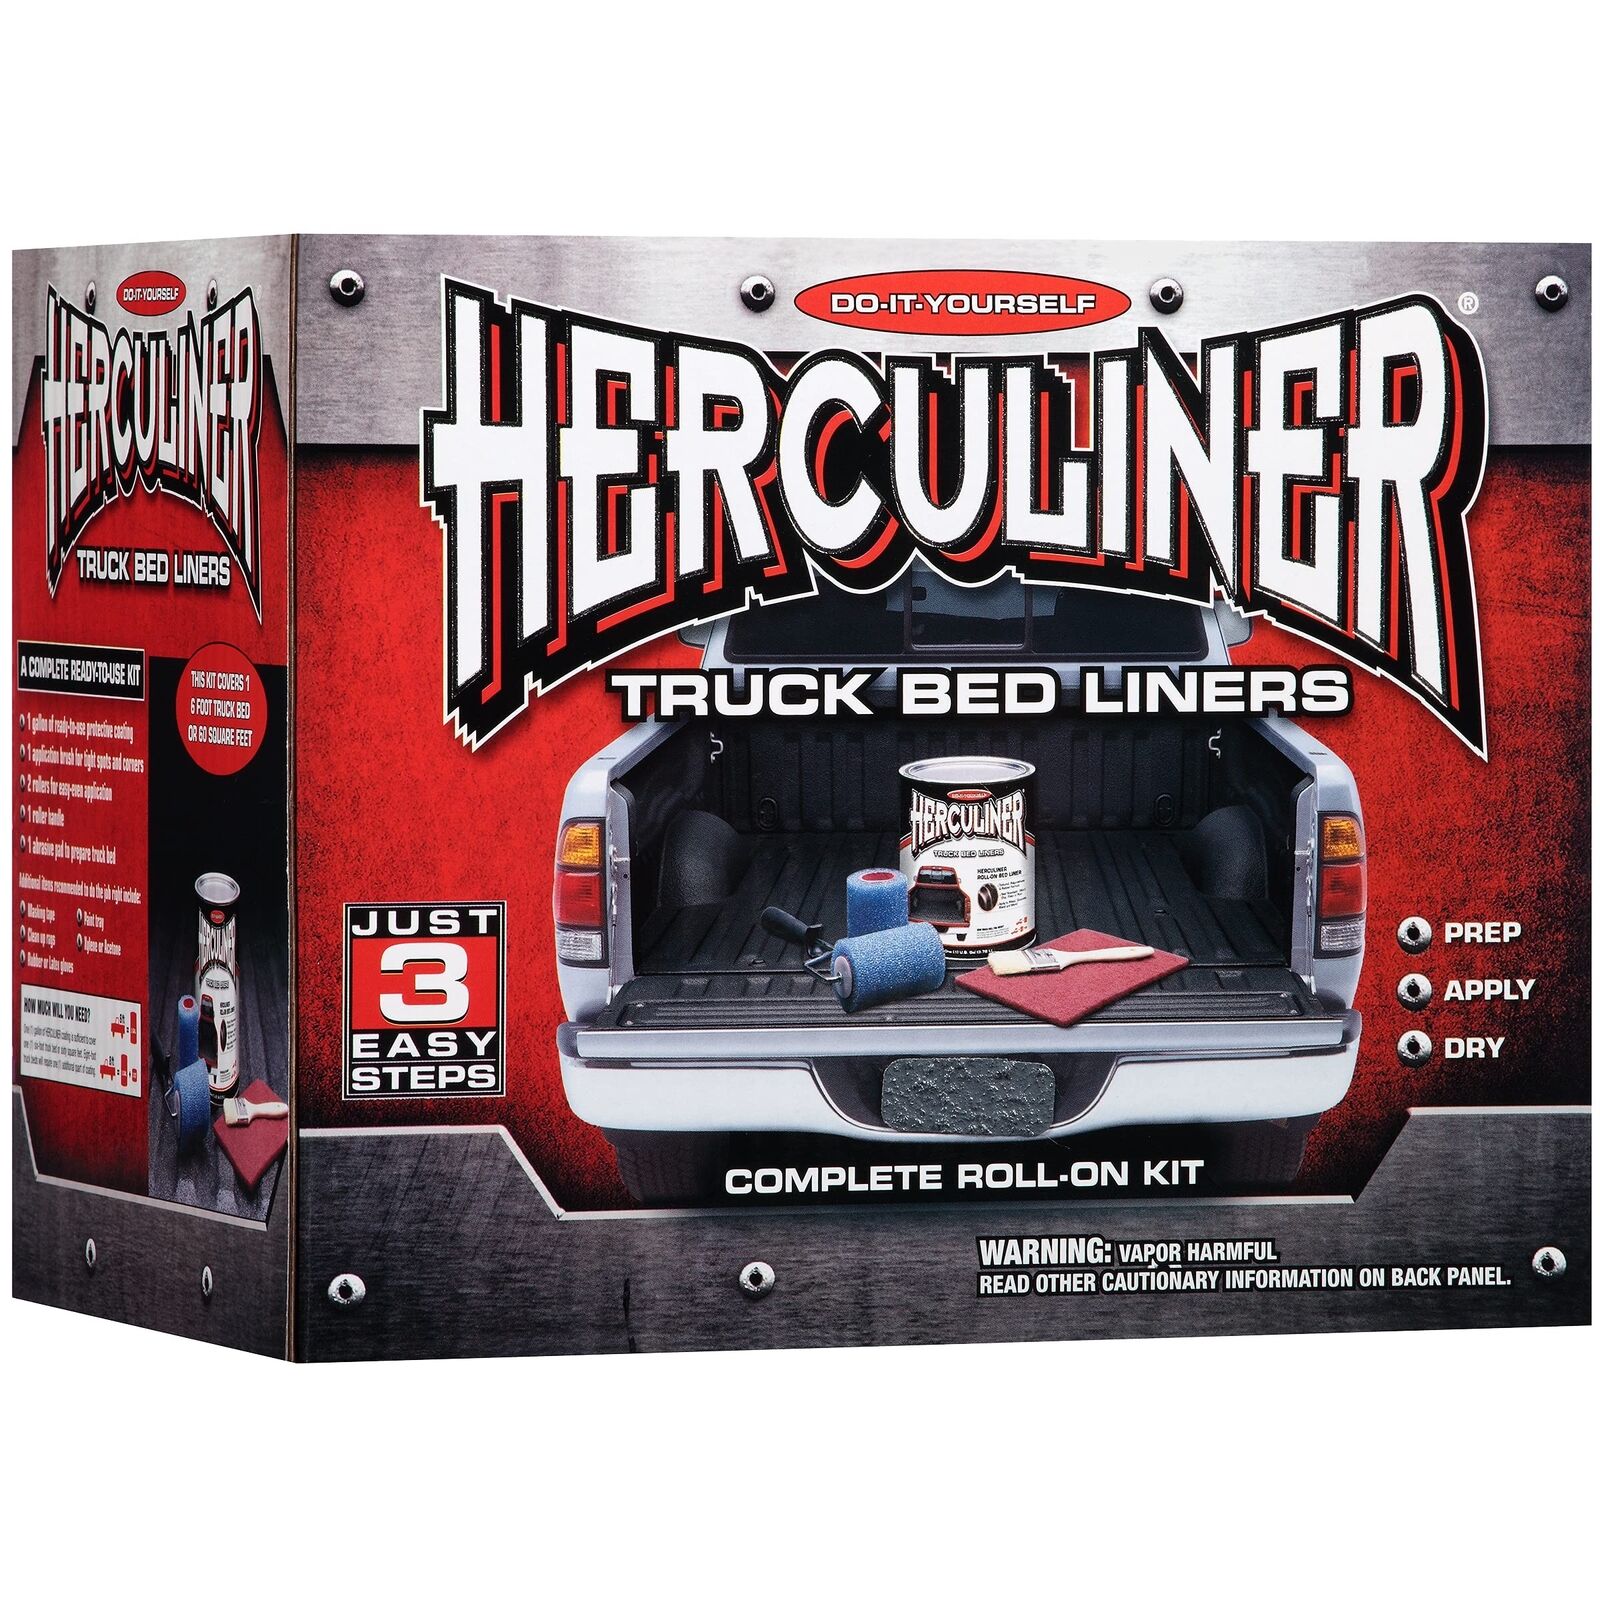 HERCULINER Black 6 Foot Truck Bed Roll on Bedliner Kit 1 Gallon Kit Gray - Kit